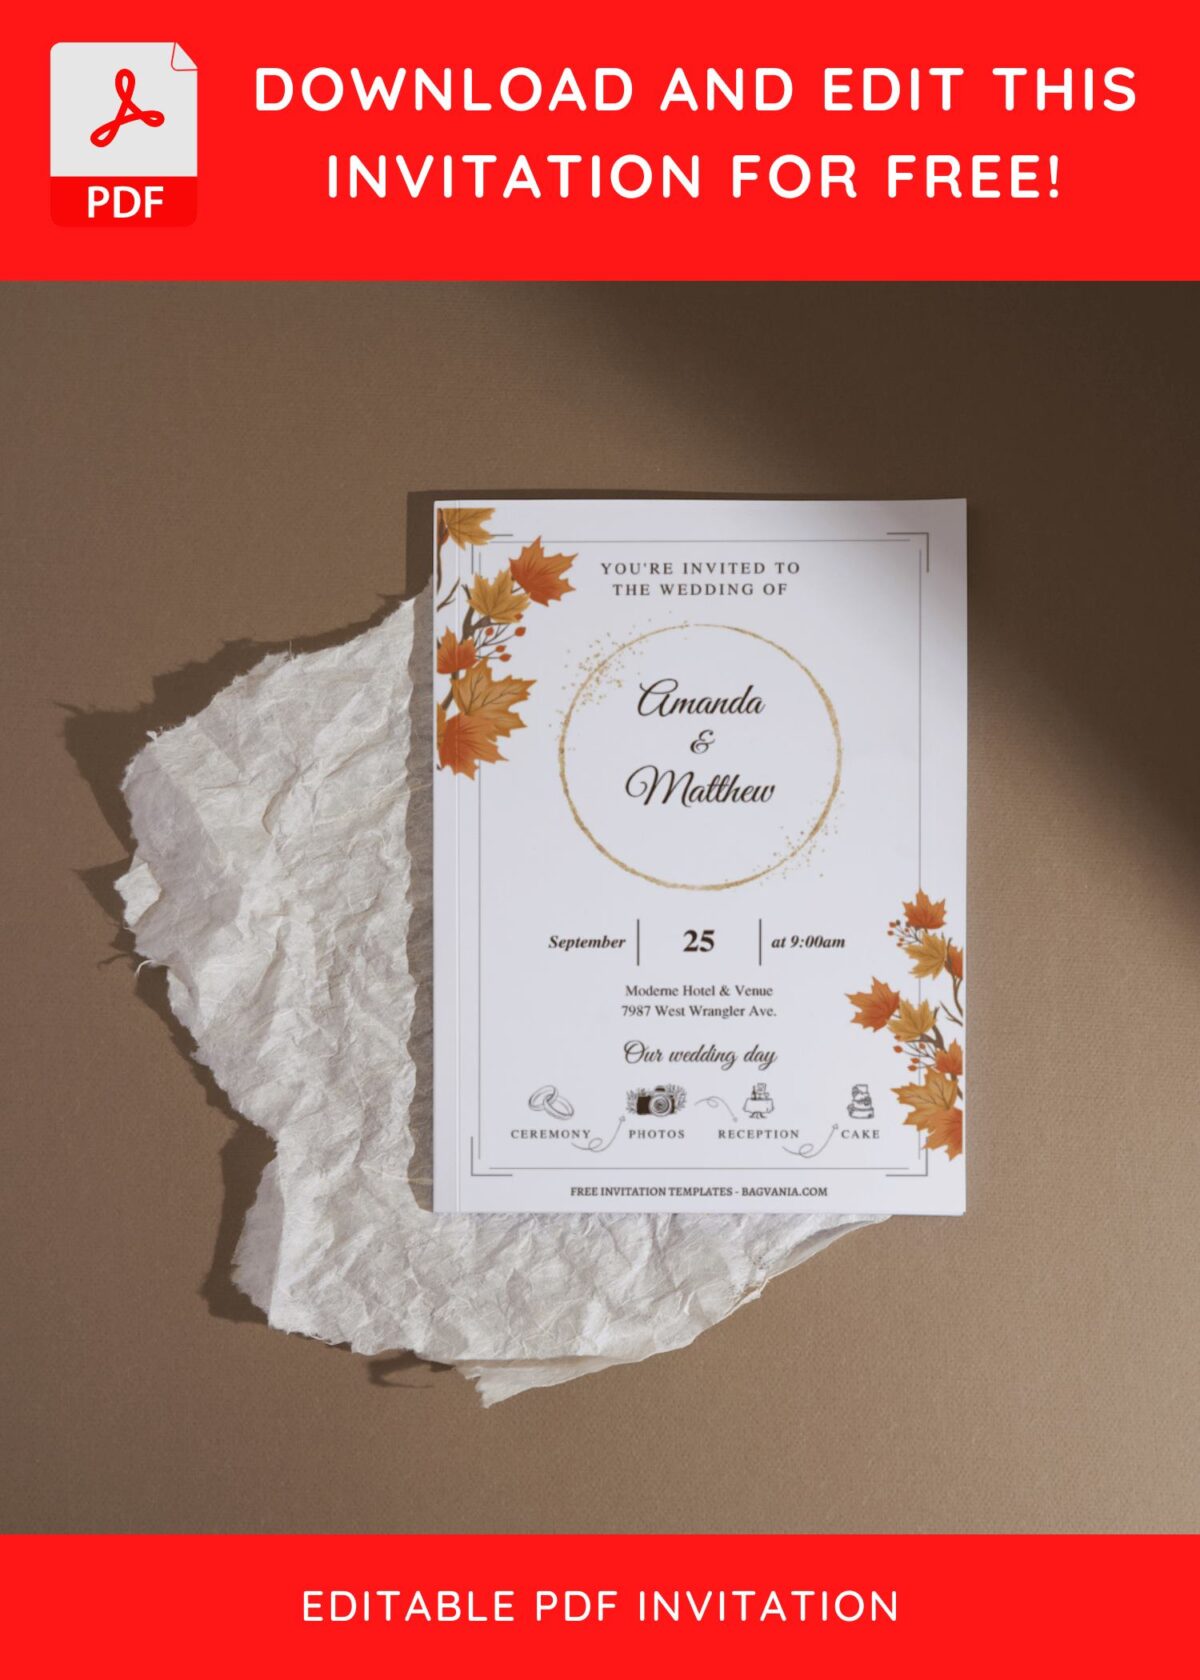 (Free Editable PDF) Wonderful Autumn Wedding Invitation Templates I